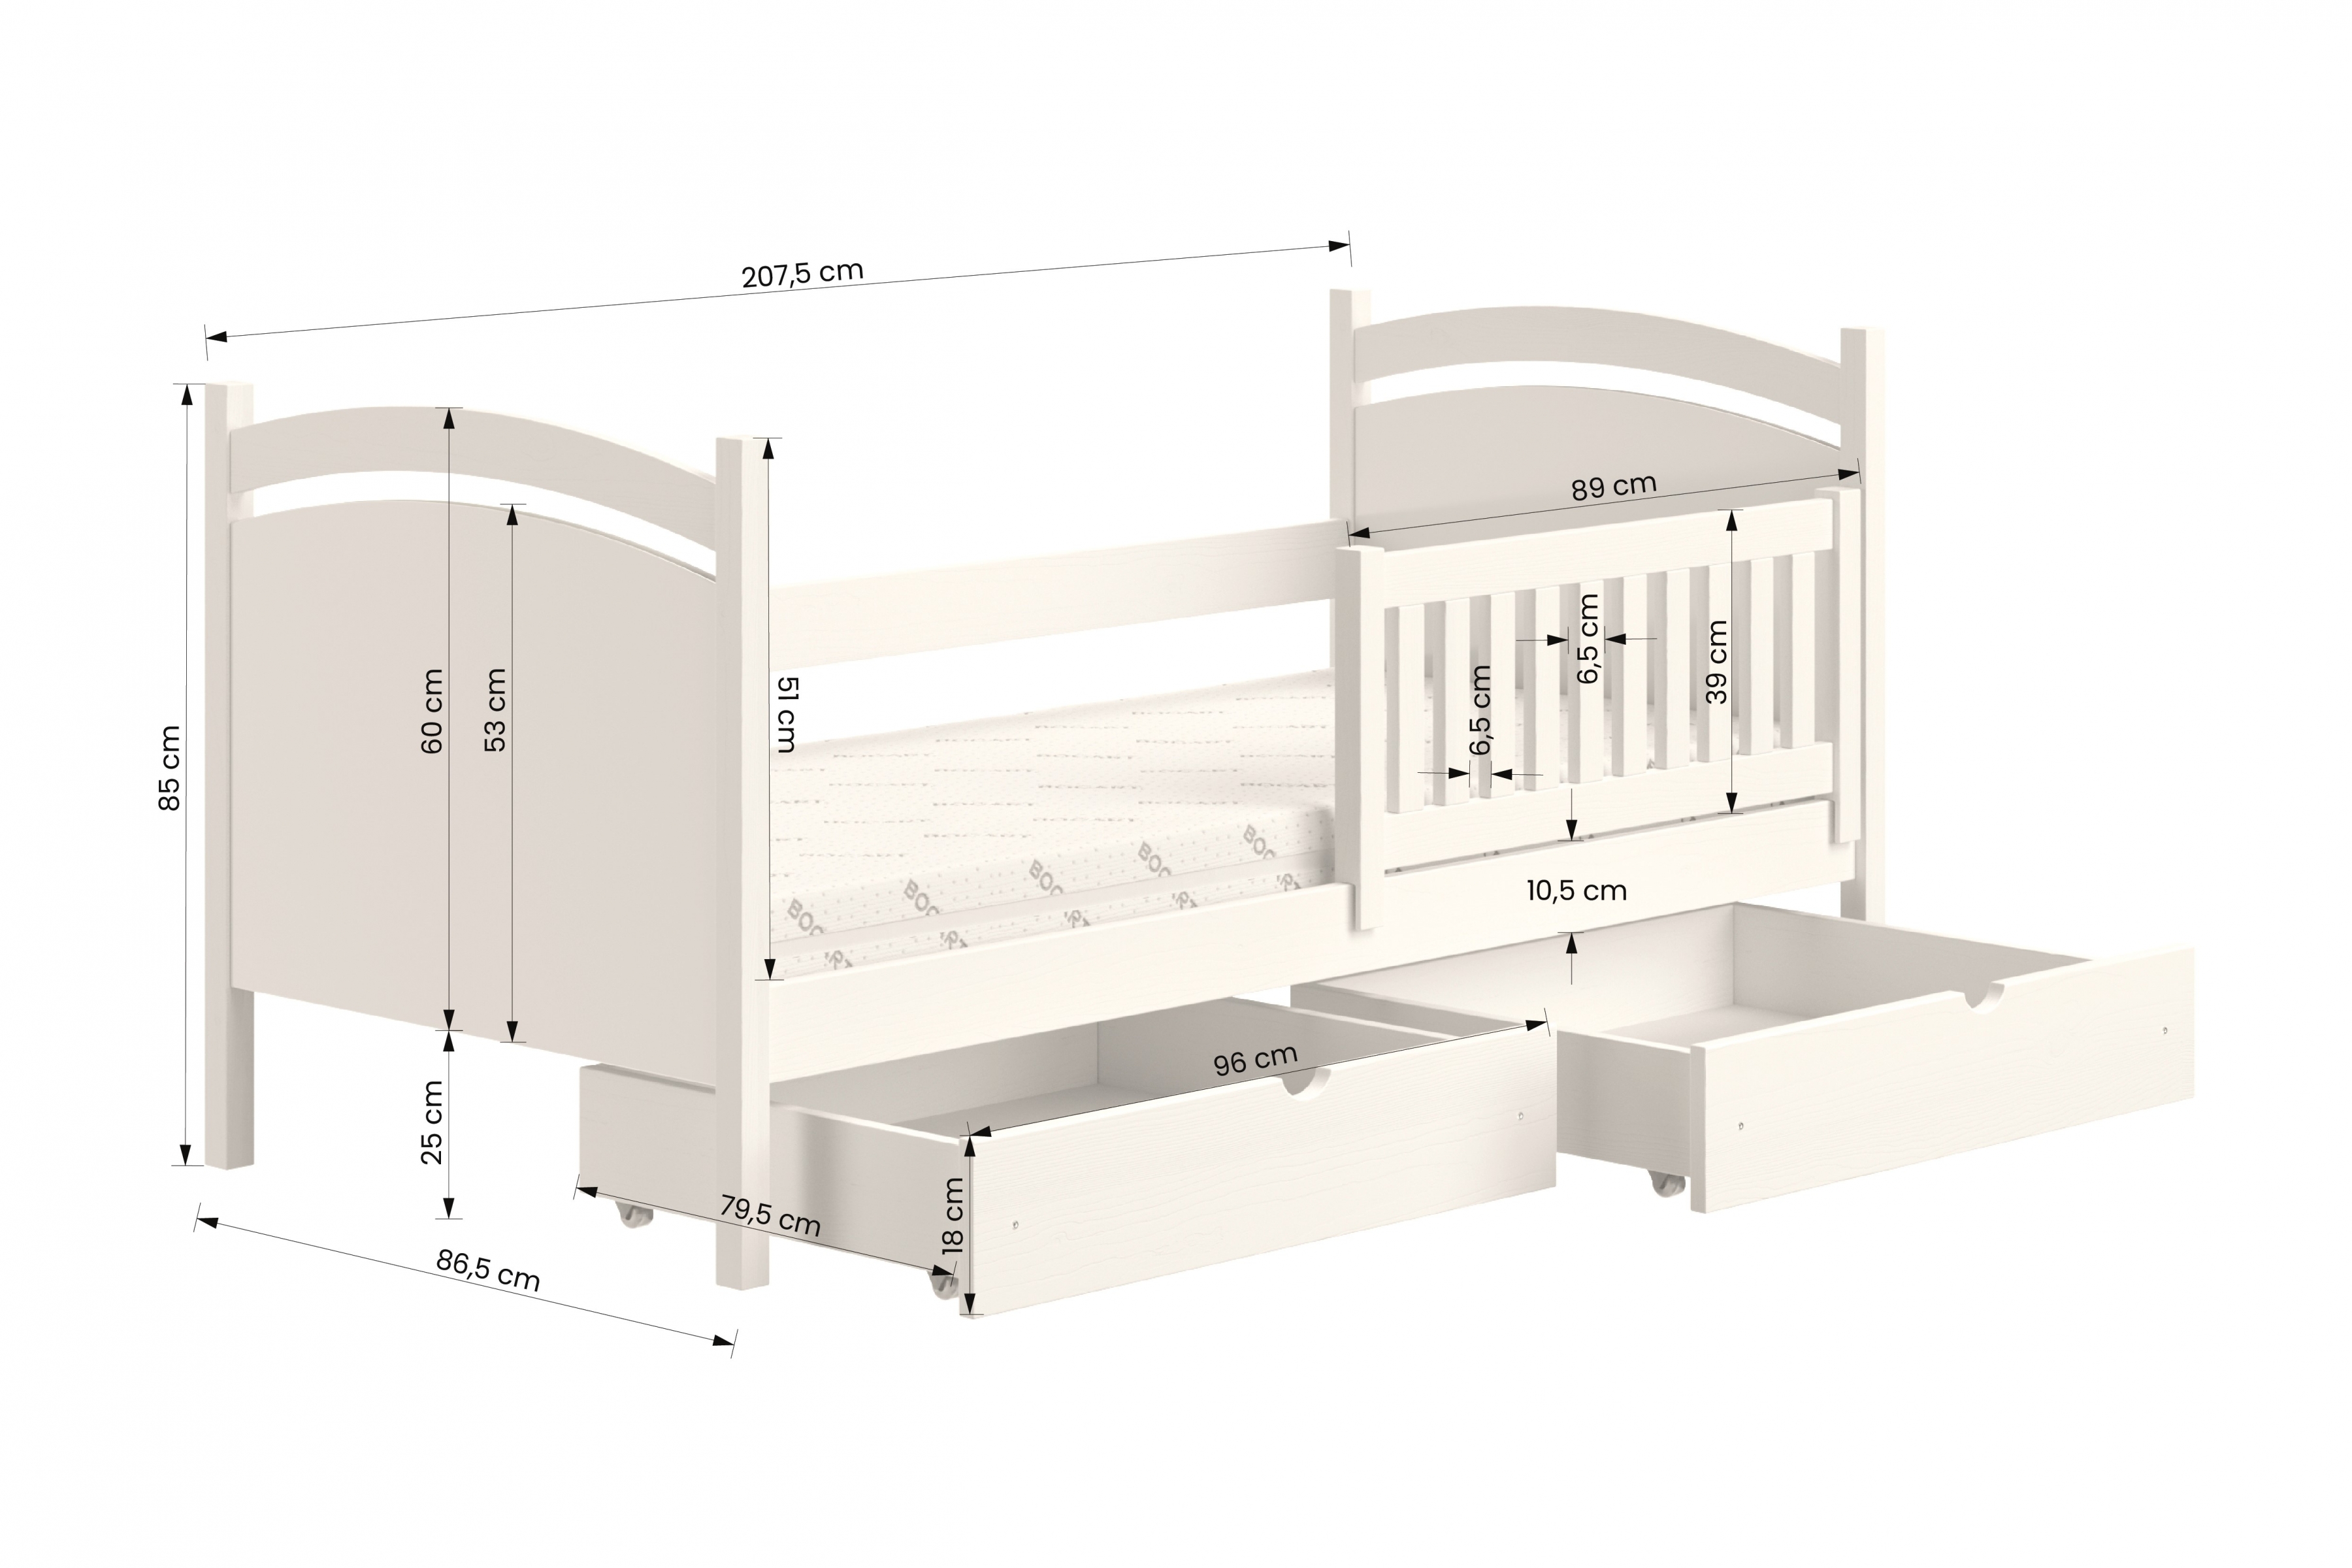 Detská posteľ s tabuľou Amely - Farba šedý, rozmer 80x200 Posteľ dzieciece z tablica suchoscieralna Amely - Rozmery